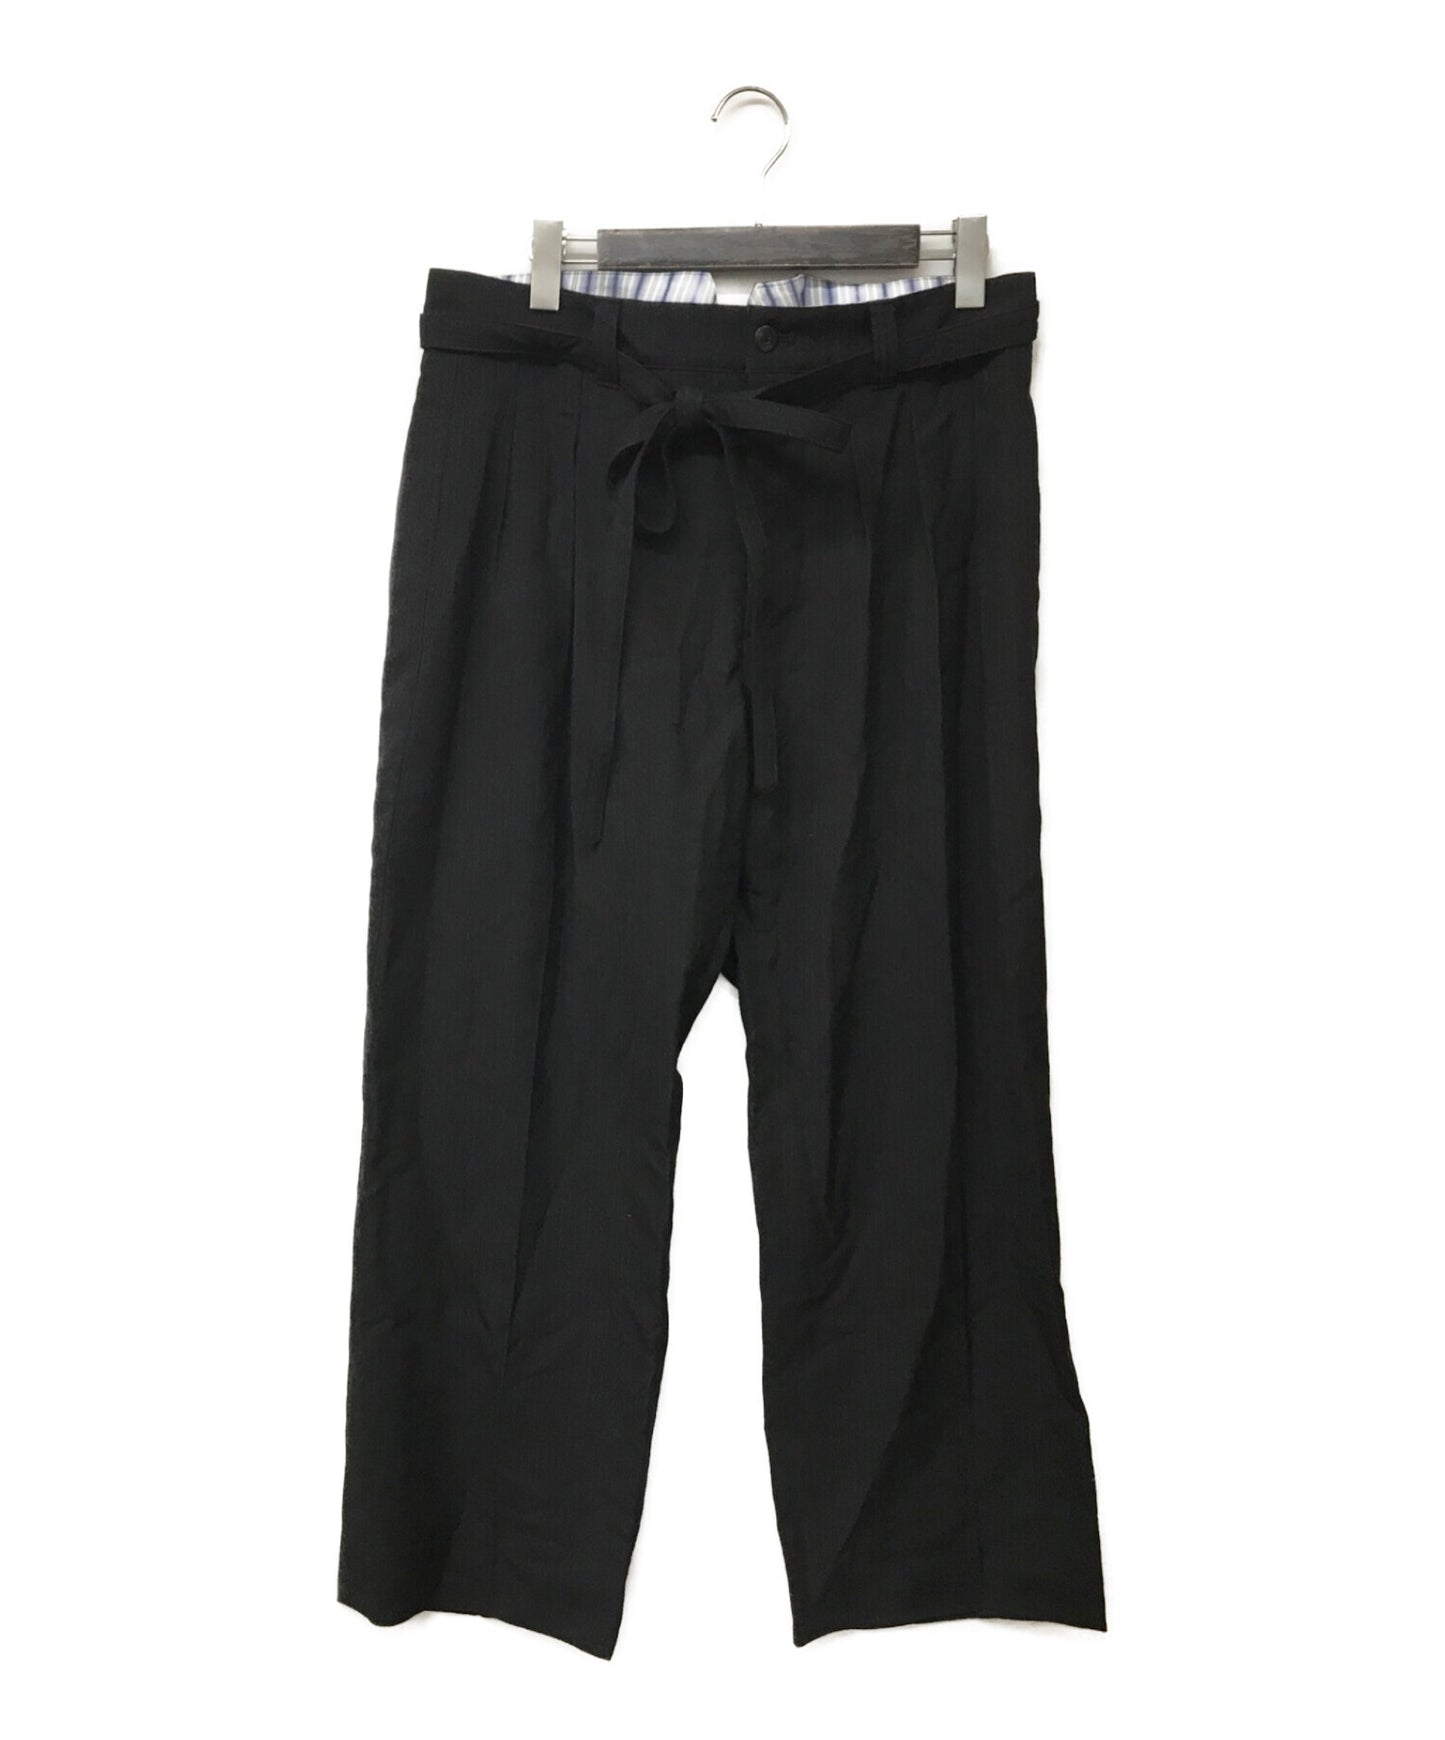 [Pre-owned] VISVIM HAKAMA PANTS BANDED WOOL STRIPE Hakama pants banded wool stripe 0116205008023